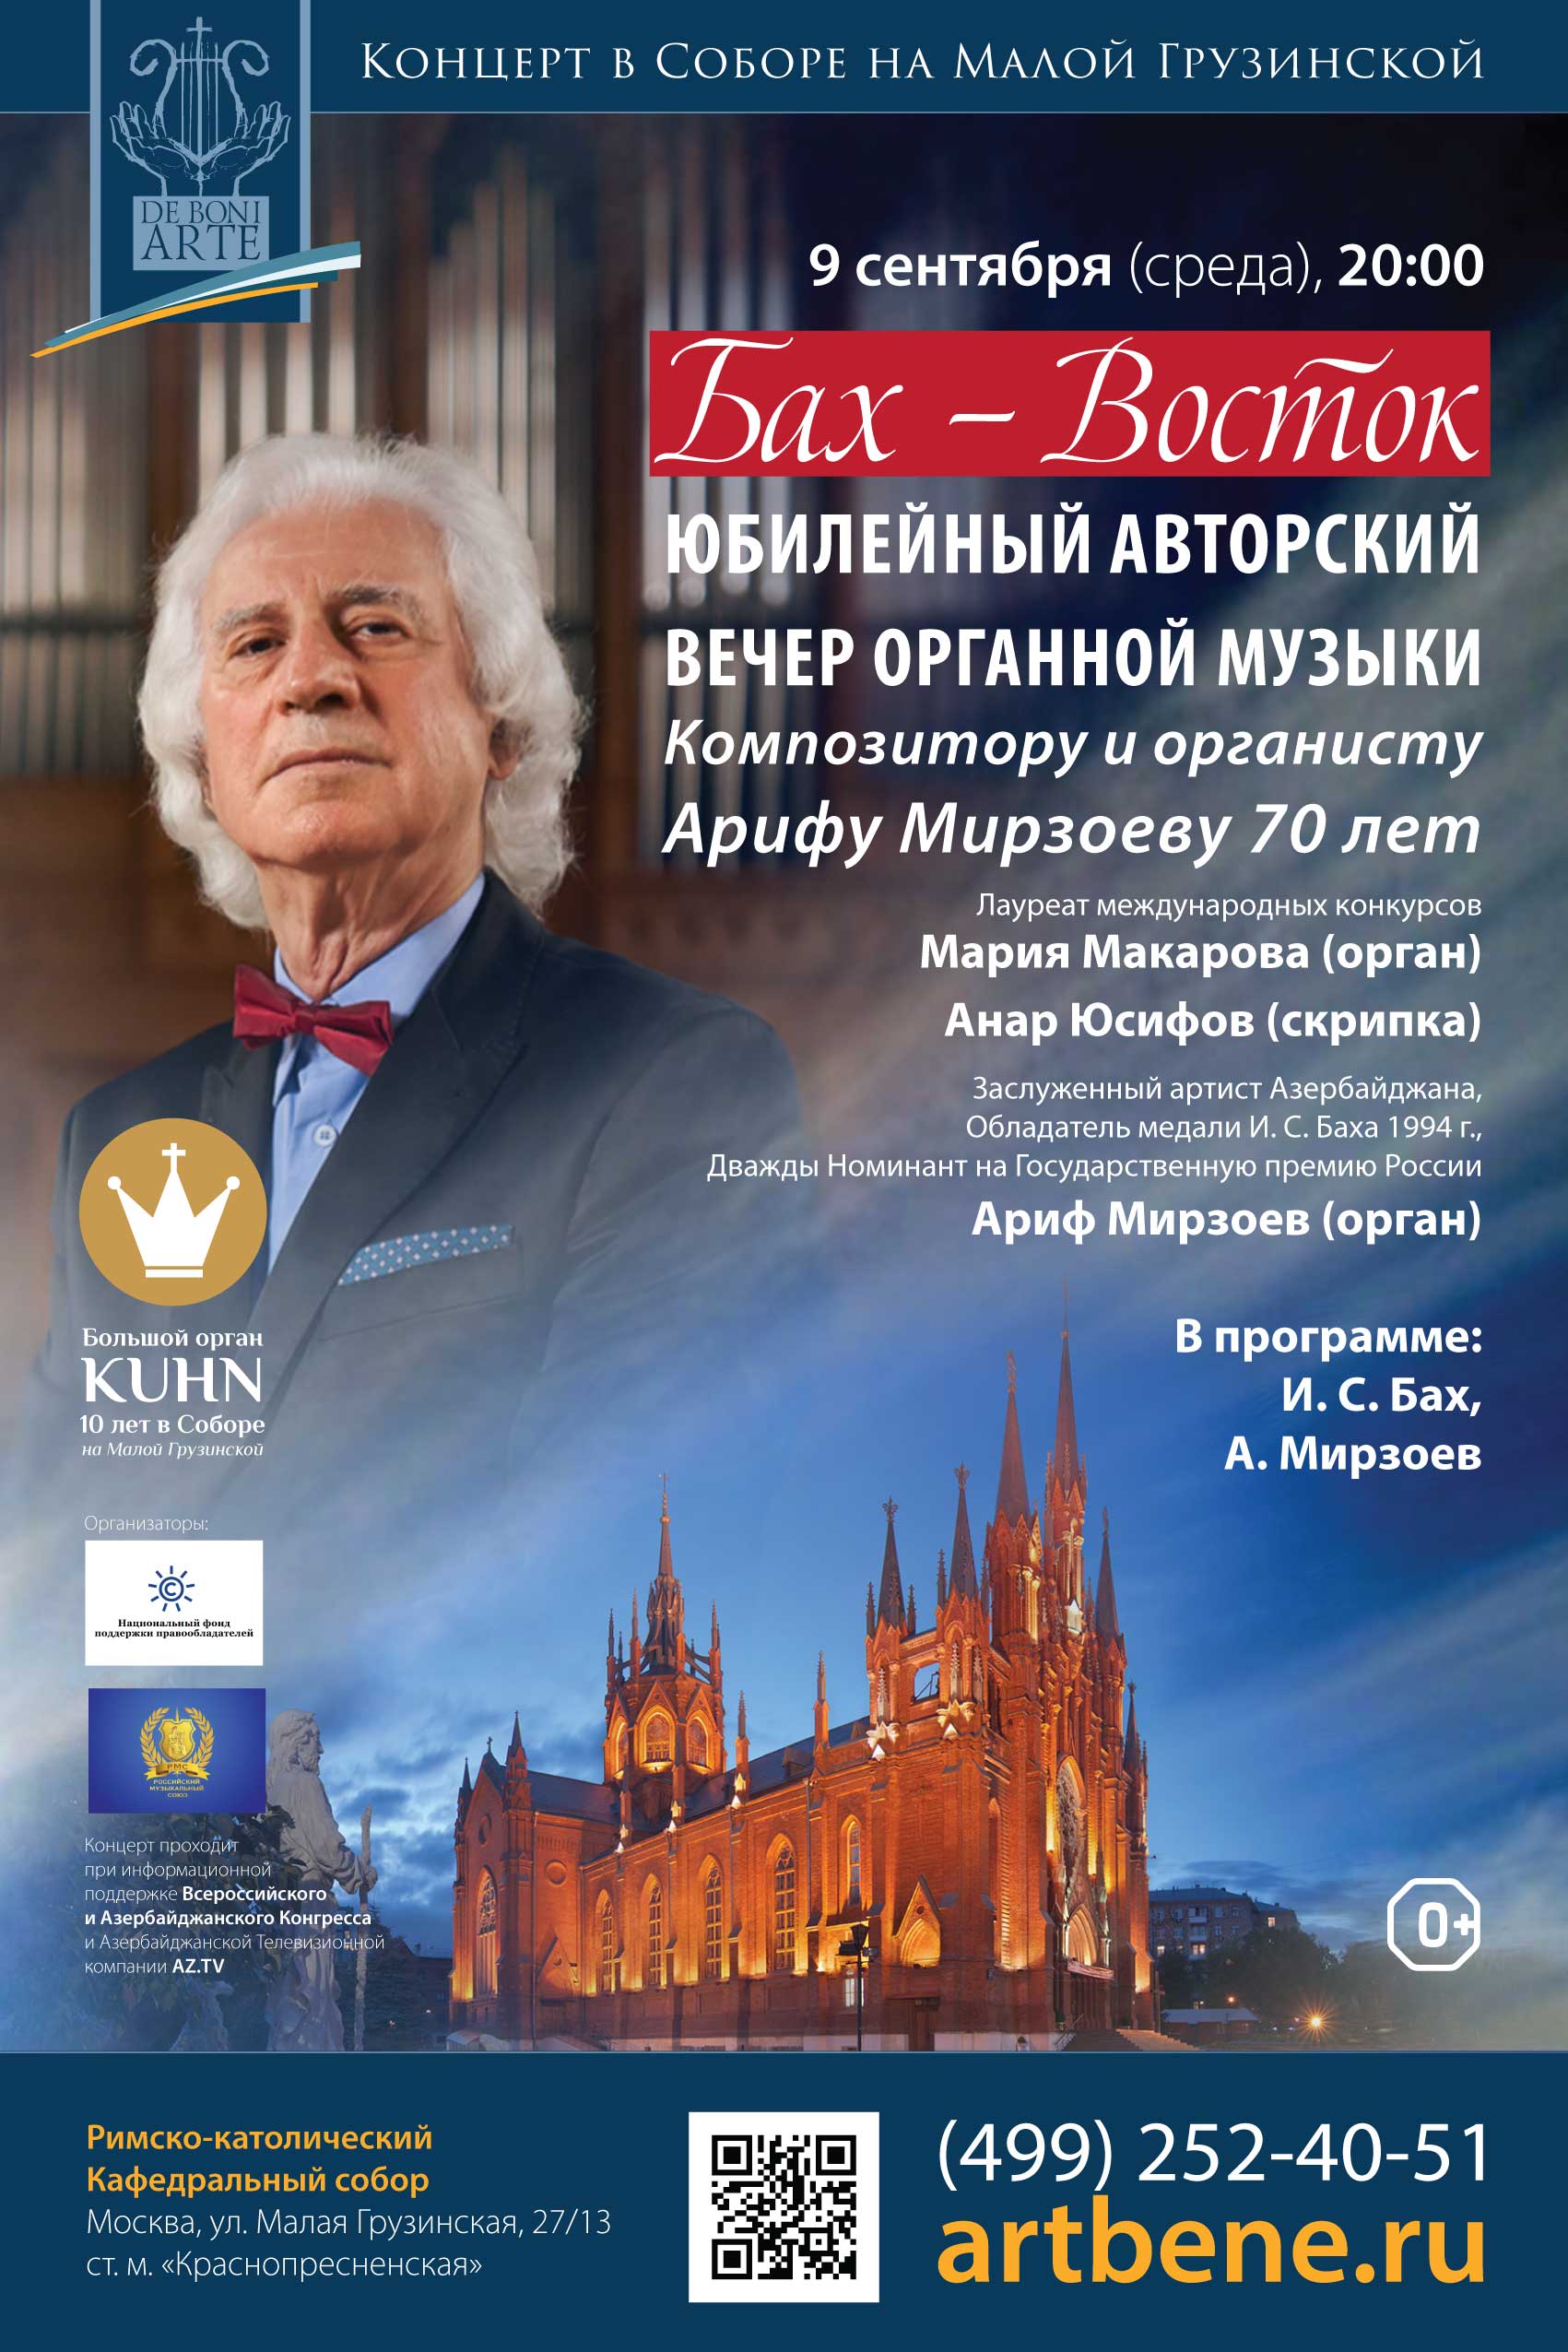 При поддержке НФПП пройдет вечер органной музыки, посвященный 70-летию Арифа Мирзоева